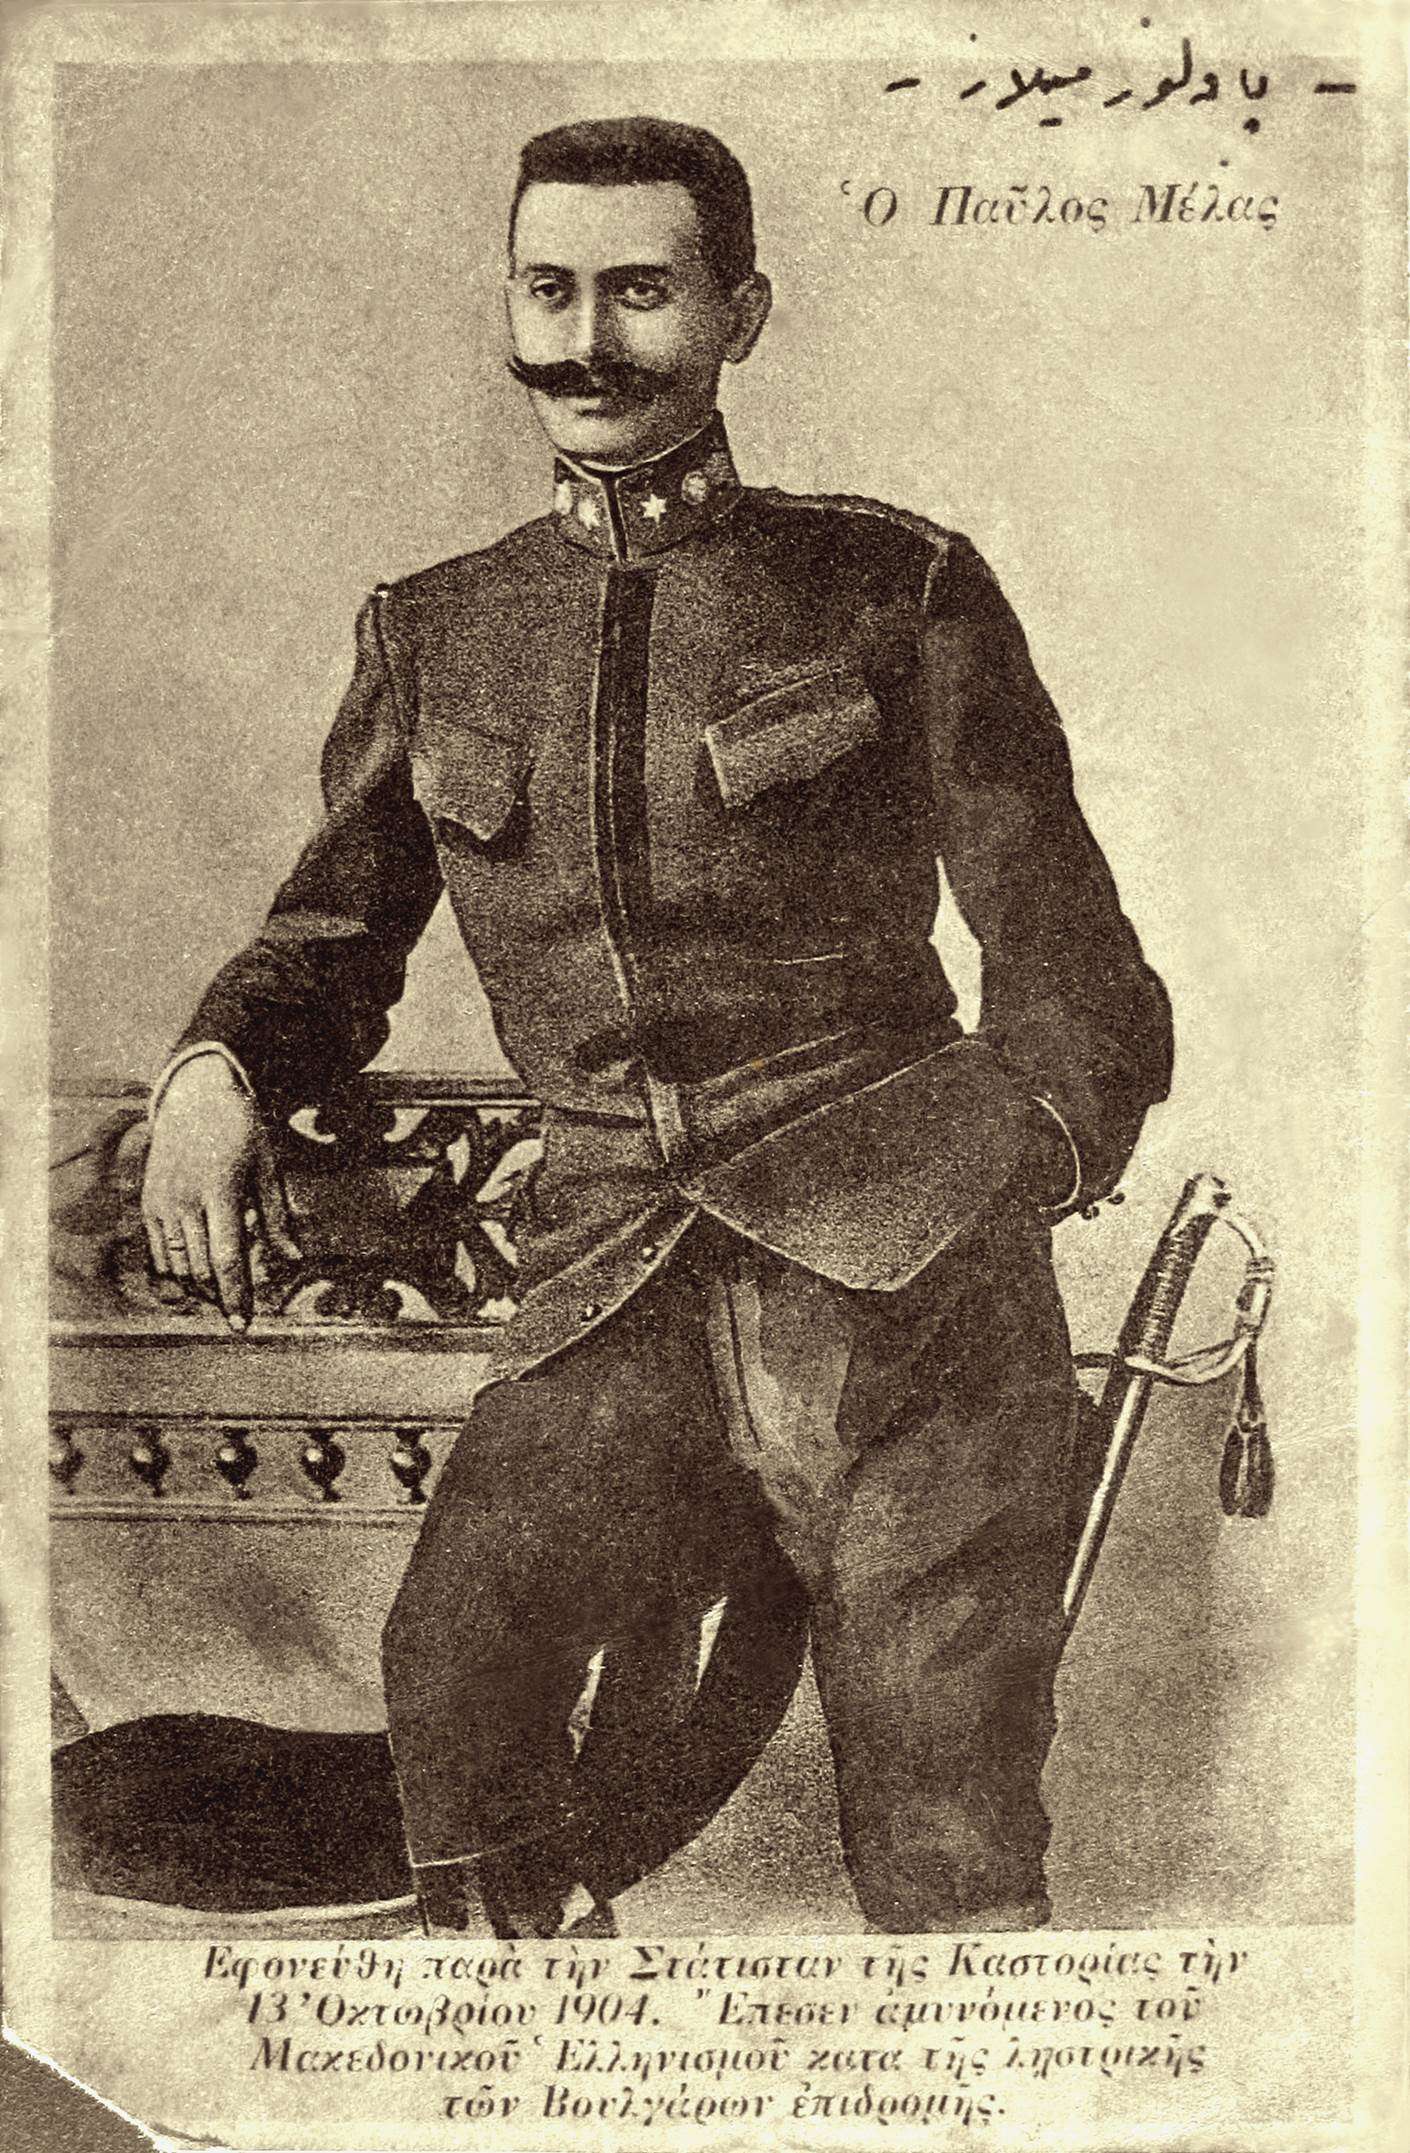 Ο Παύλος Μελάς (29 Μαρτίου 1870 – 13 Οκτωβρίου 1904) ήταν αξιωματικός πυροβολικού του ελληνικού στρατού. Ήταν γιος του Μιχαήλ Μελά και γαμπρός του Στέφανου Δραγούμη. Στάθηκε από τους πρωτεργάτες του Μακεδονικού αγώνα. 